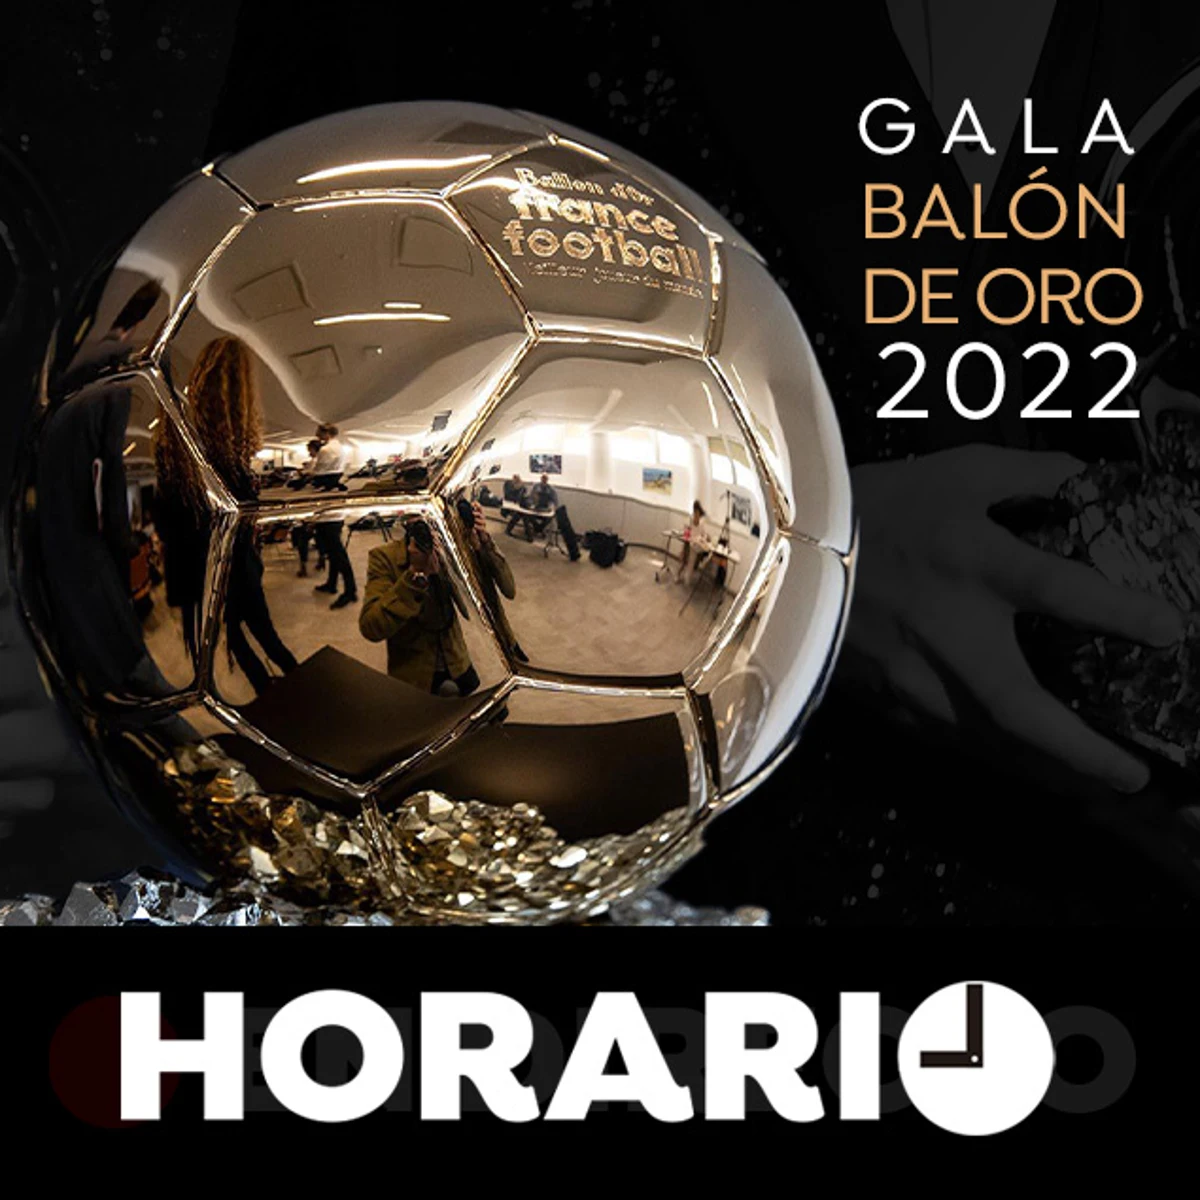 Balón de oro 2022: Horario y dónde ver la gala hoy 17 de octubre en directo